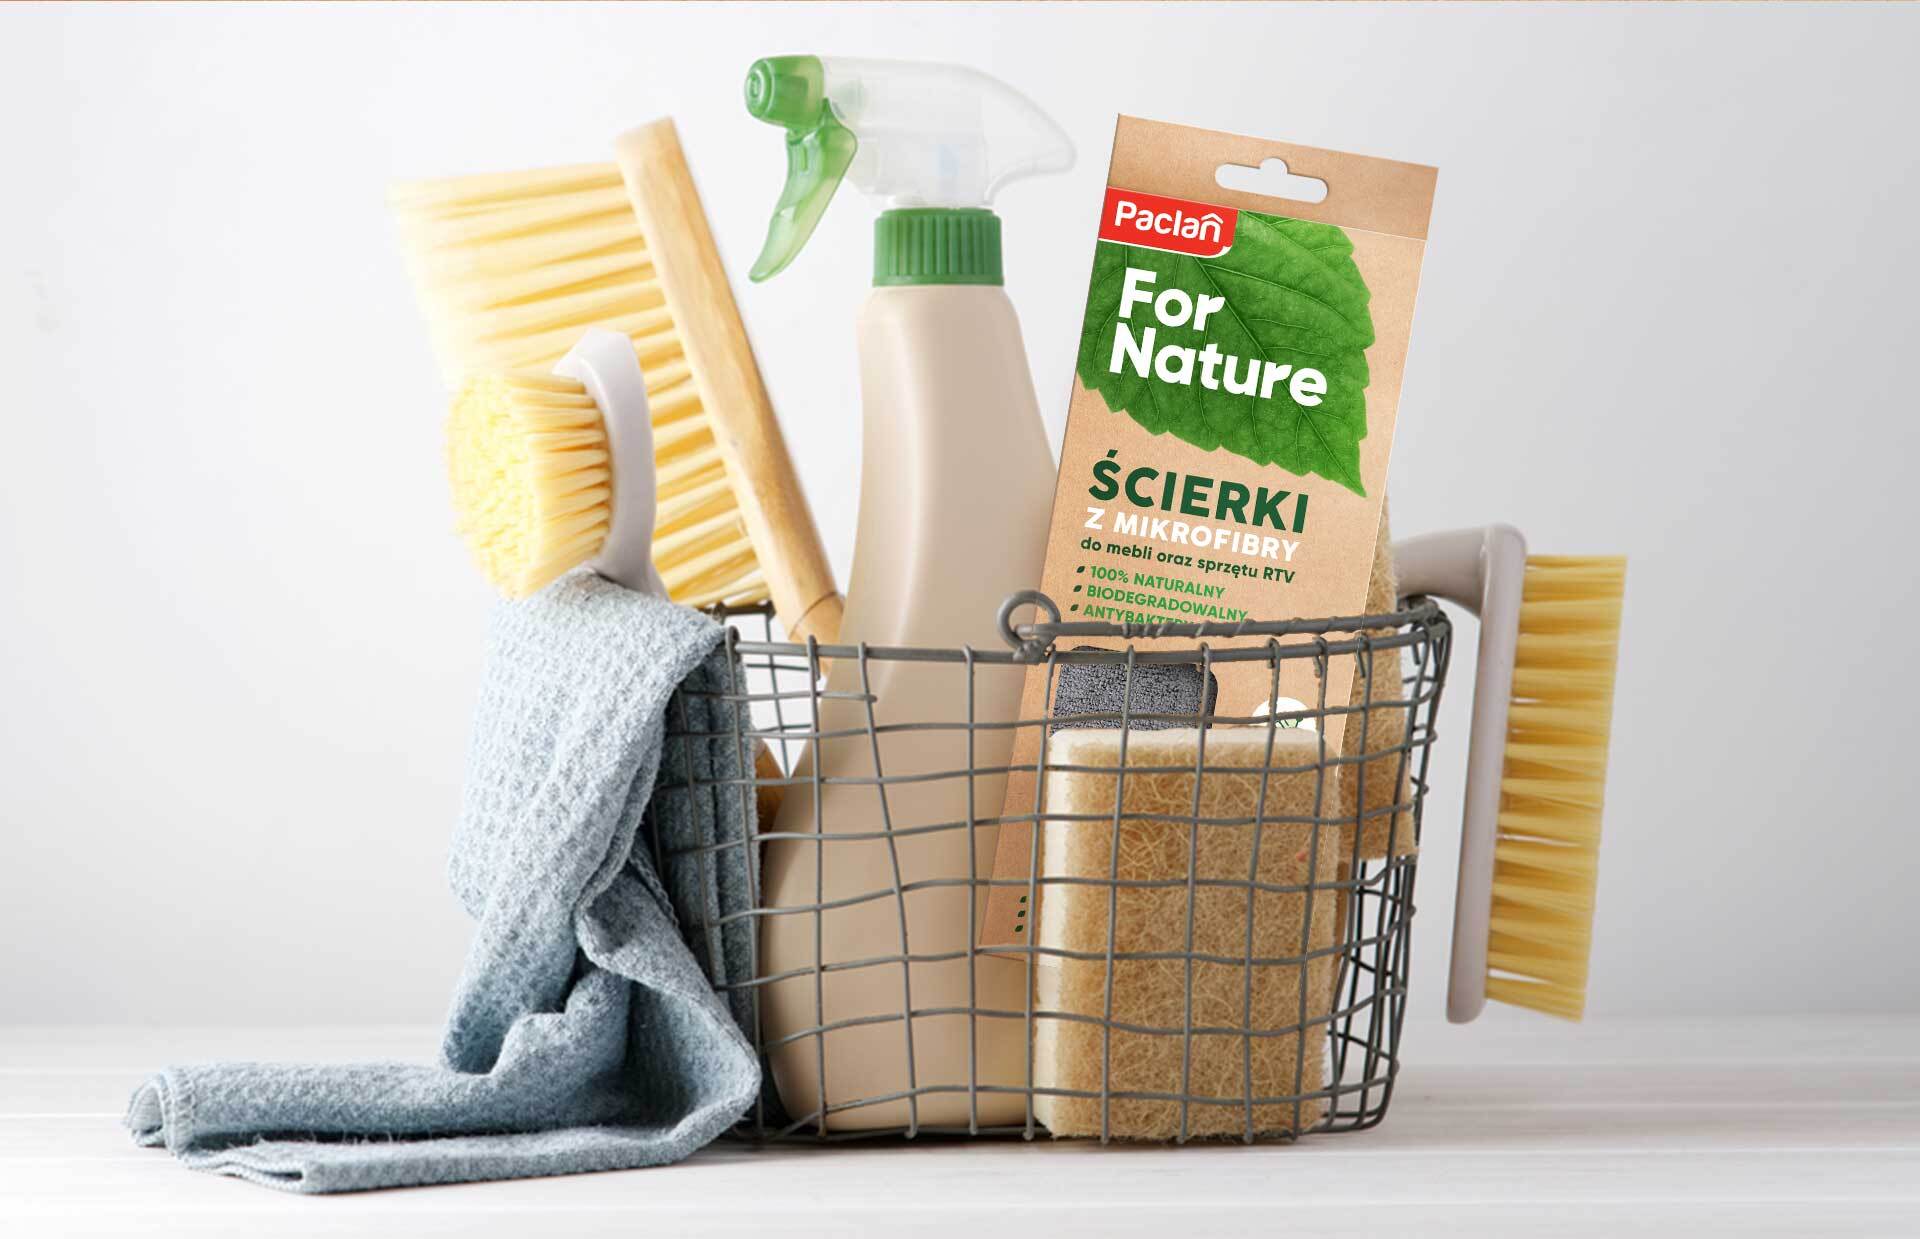 Kosz z produktami do czyszczenia domu i ekologiczny design opakowań Paclan For Nature.